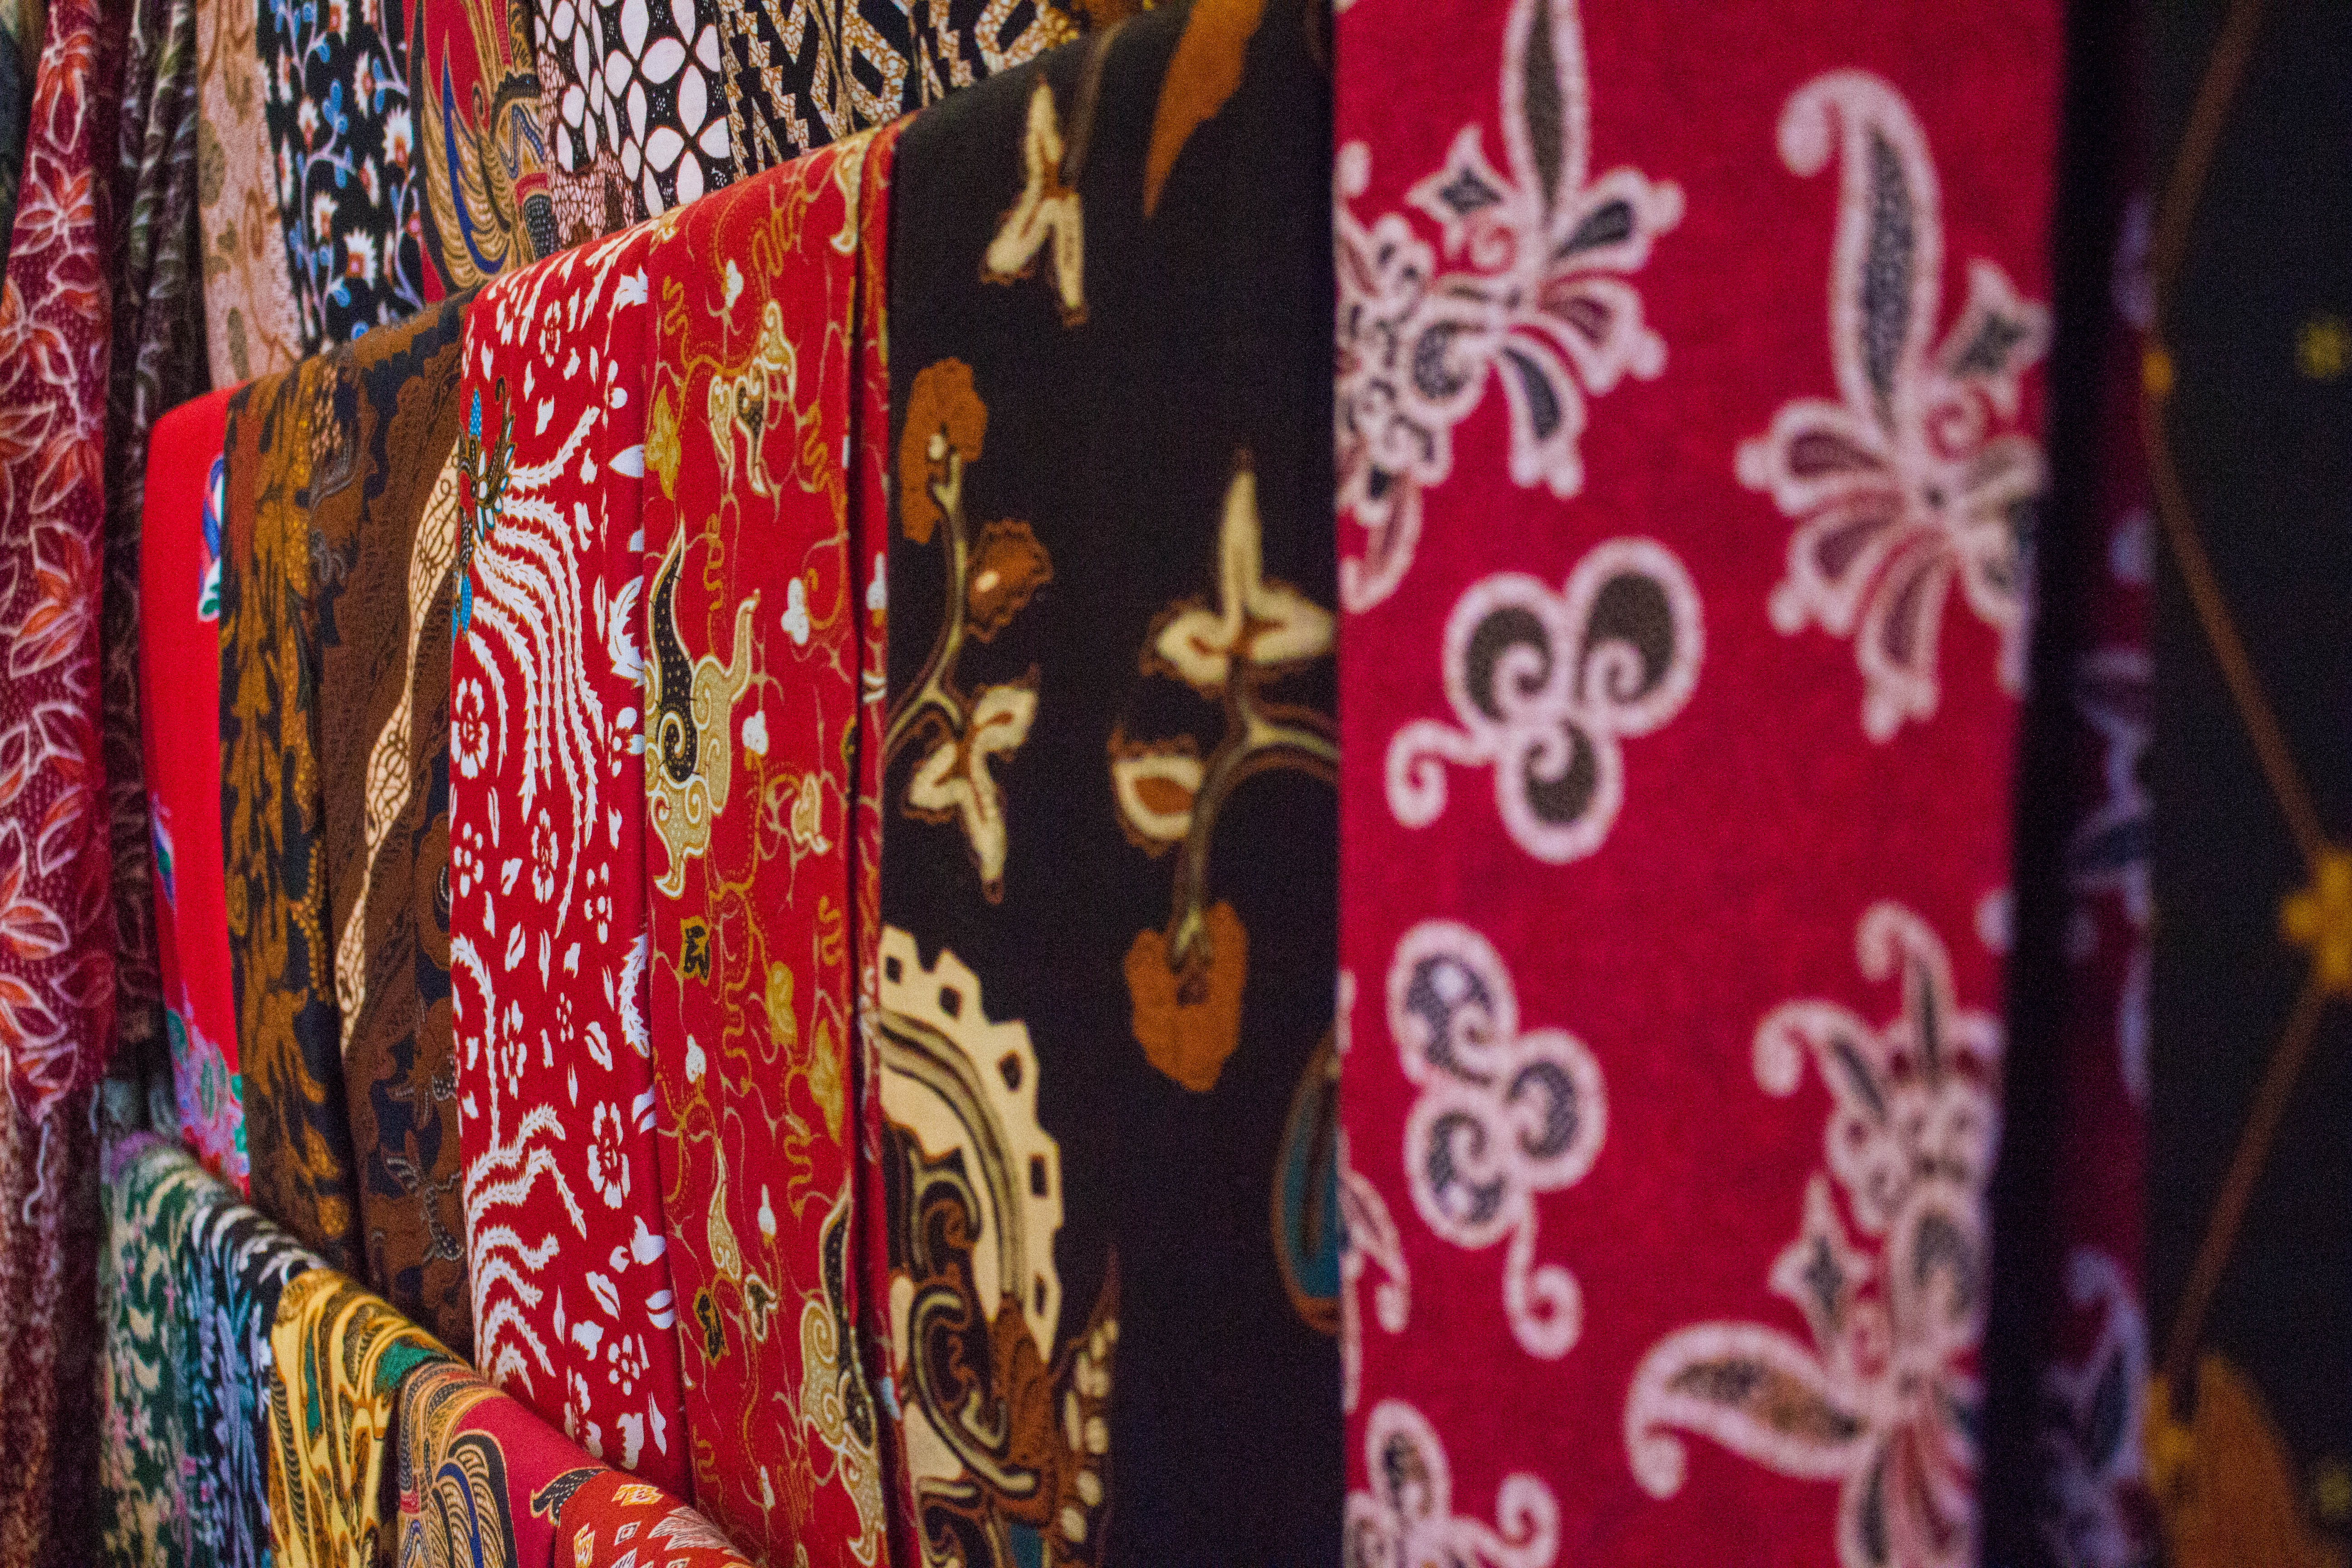 Koleksi gambar batik | motif | corak batik terlengkap Indonesia: Kain